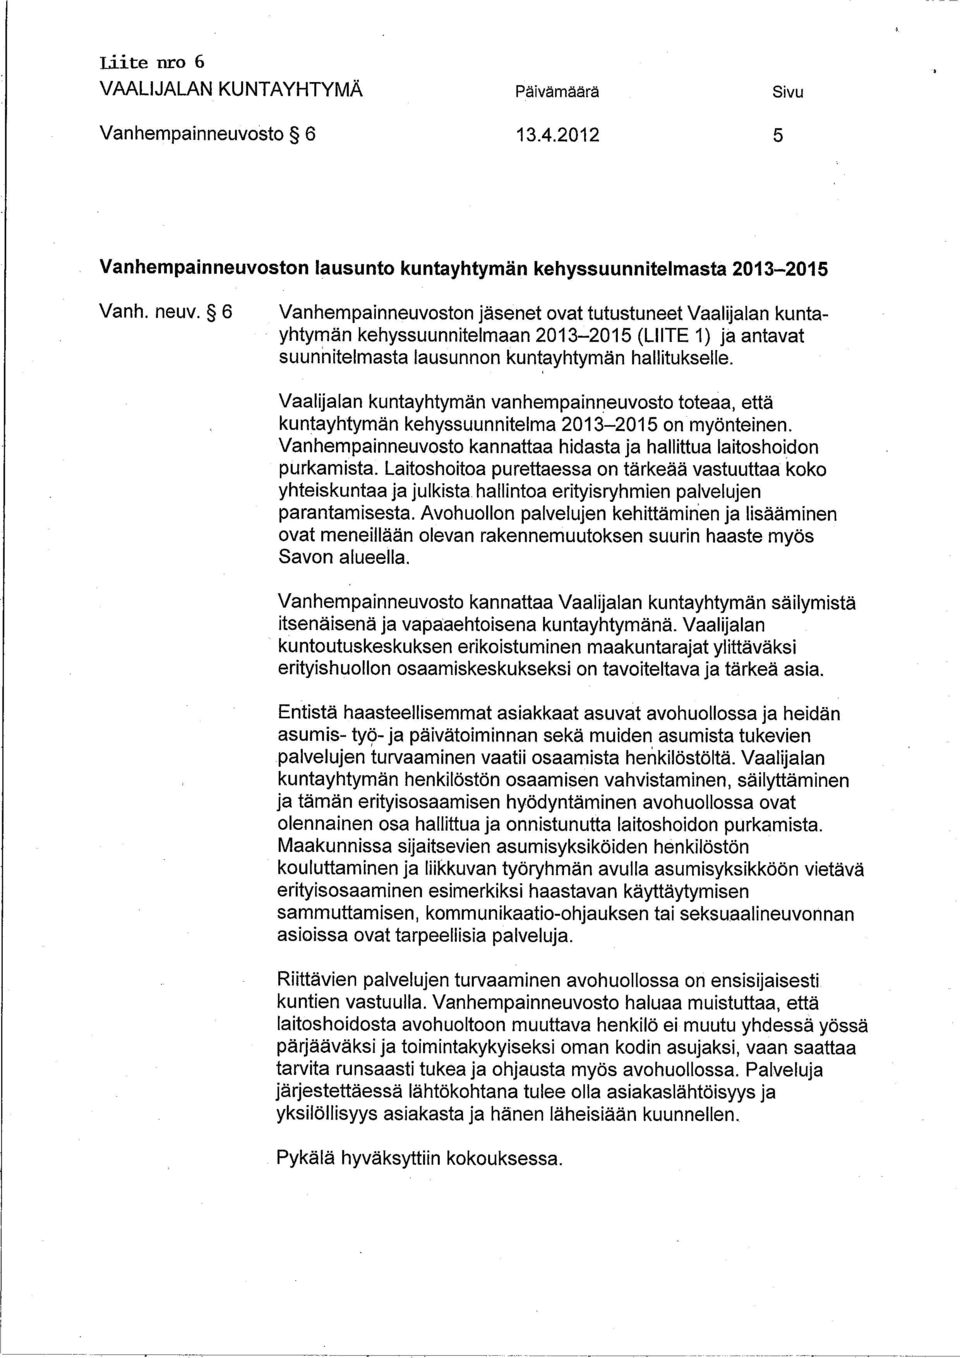 Vaalijalan kuntayhtymän vanhempainneuvosto toteaa, että kuntayhtymän kehyssuunnitelma 2013-2015 on myönteinen. Vanhempainneuvosto kannattaa hidasta ja hallttua laitoshoidon purkamista.